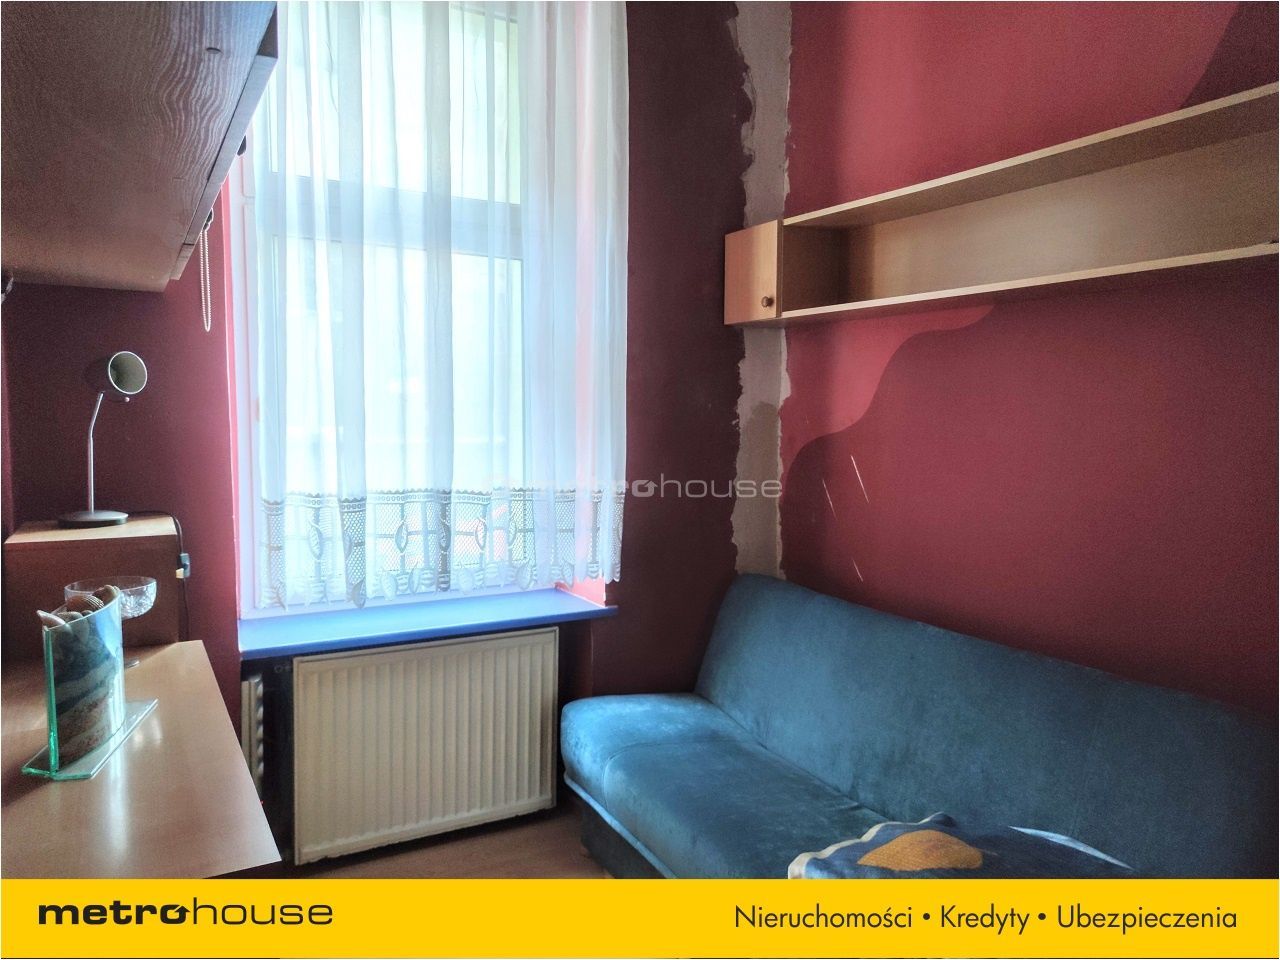 Mieszkanie na sprzedaż, Gdańsk, Nowy Port, 2 pokoje, 37 mkw, za 389000 zł: zdjęcie 93837345